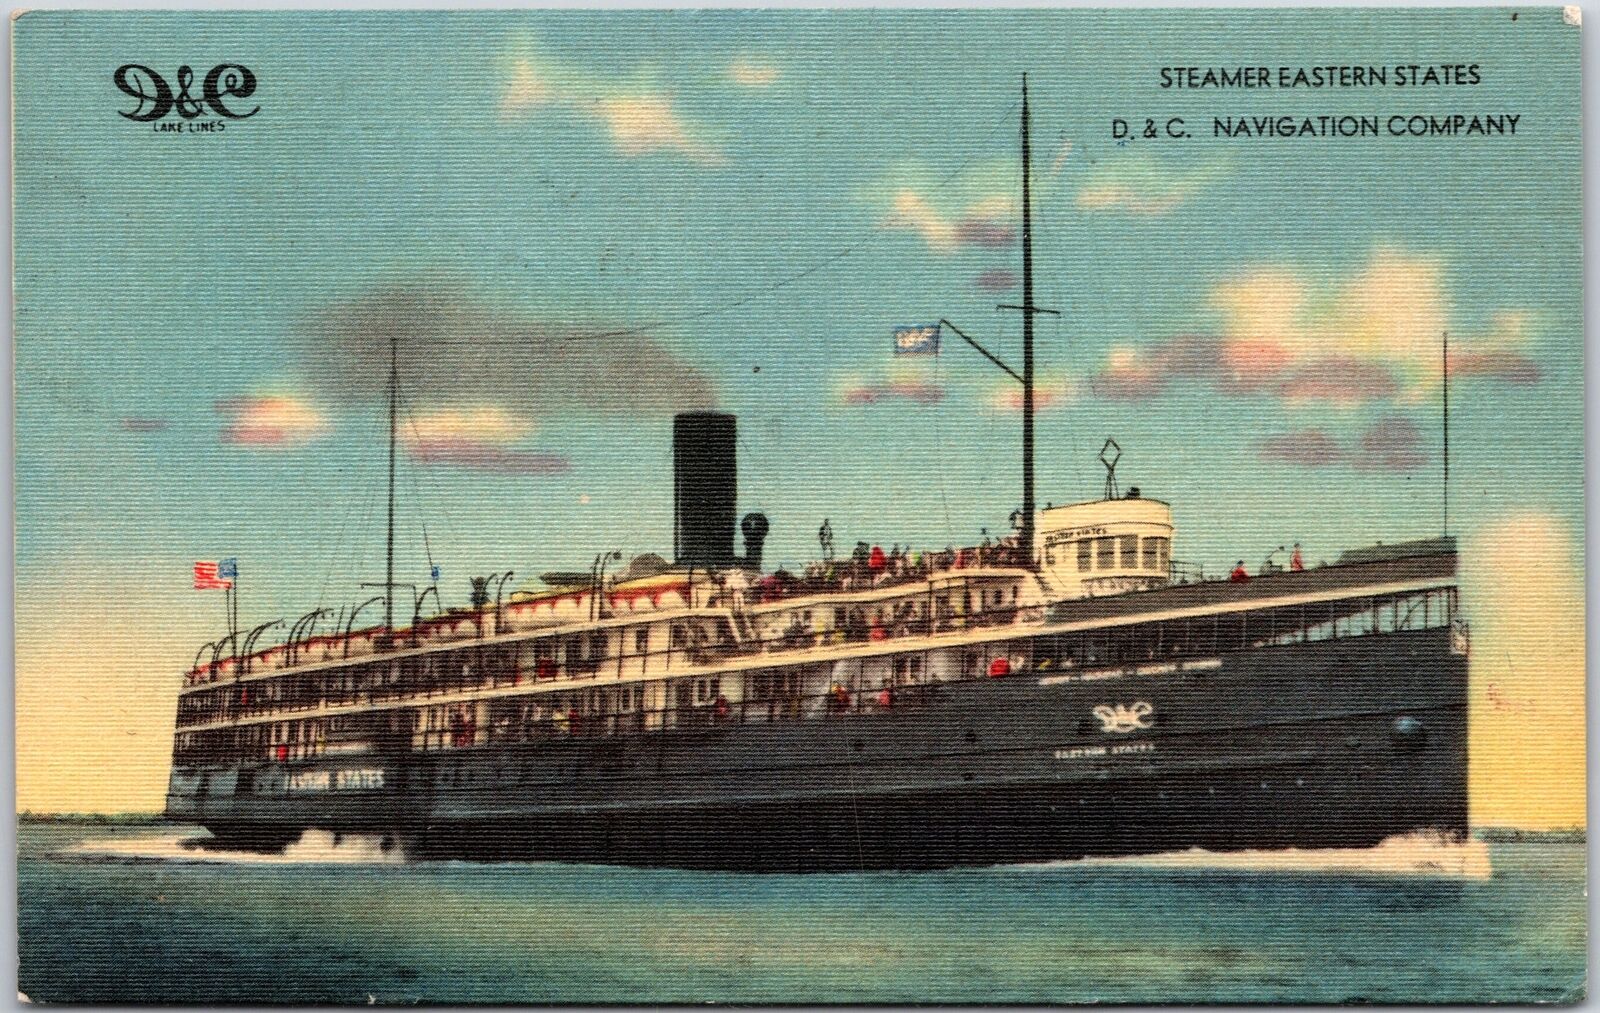 1948 Steamer Estern States D.& C. Navigation Company, Passenger Vessel, Postcard